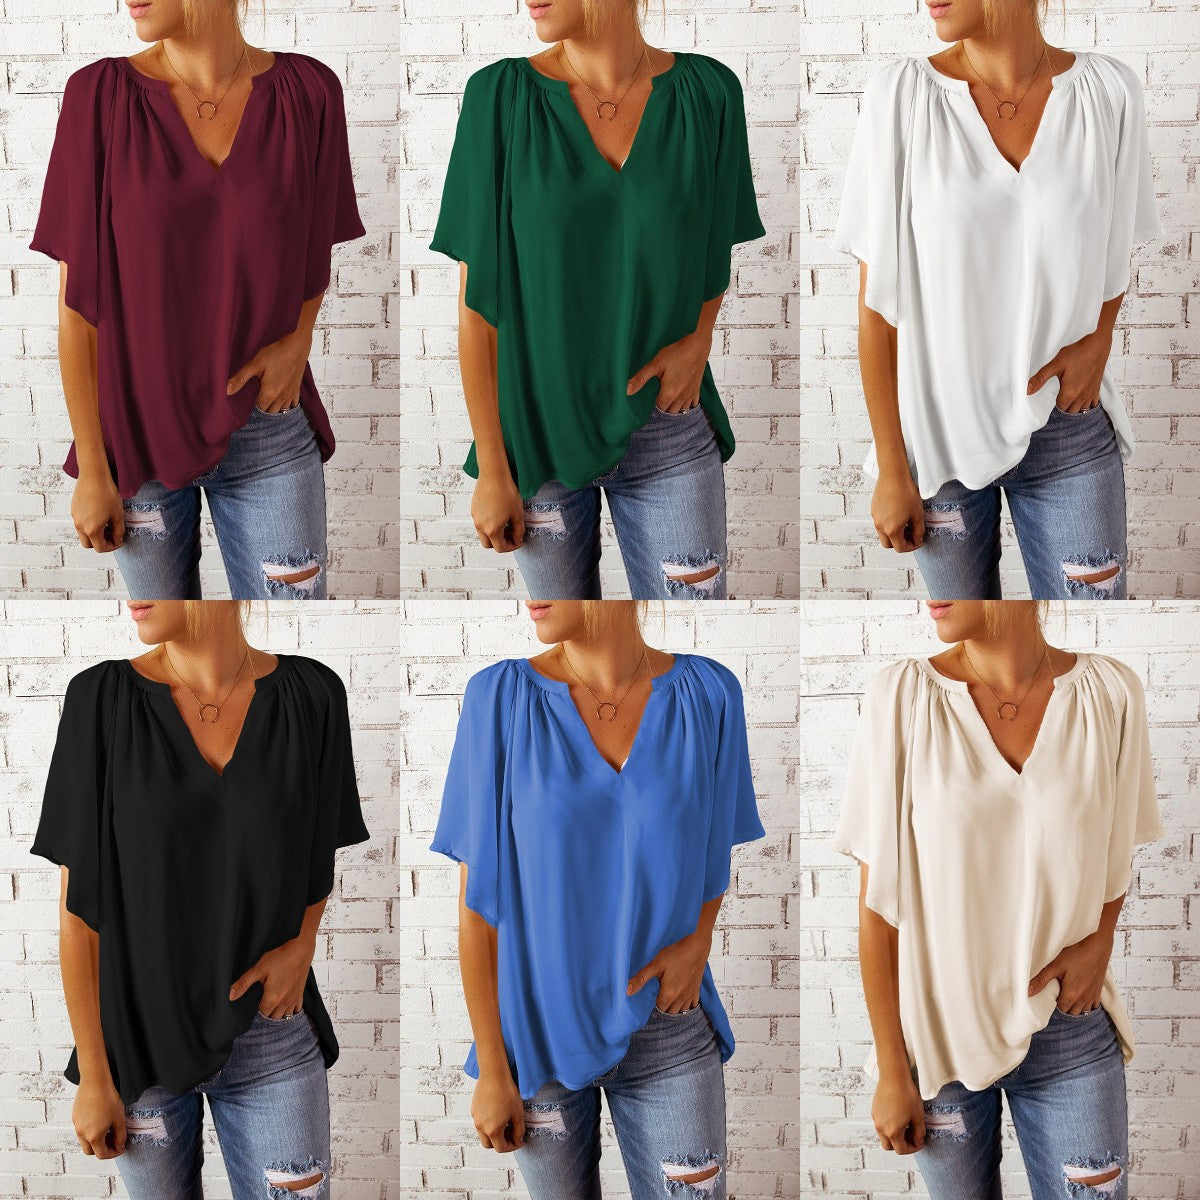 Women's Summer Loose-fitting Casual T-shirt Chiffon Shirt Blouses